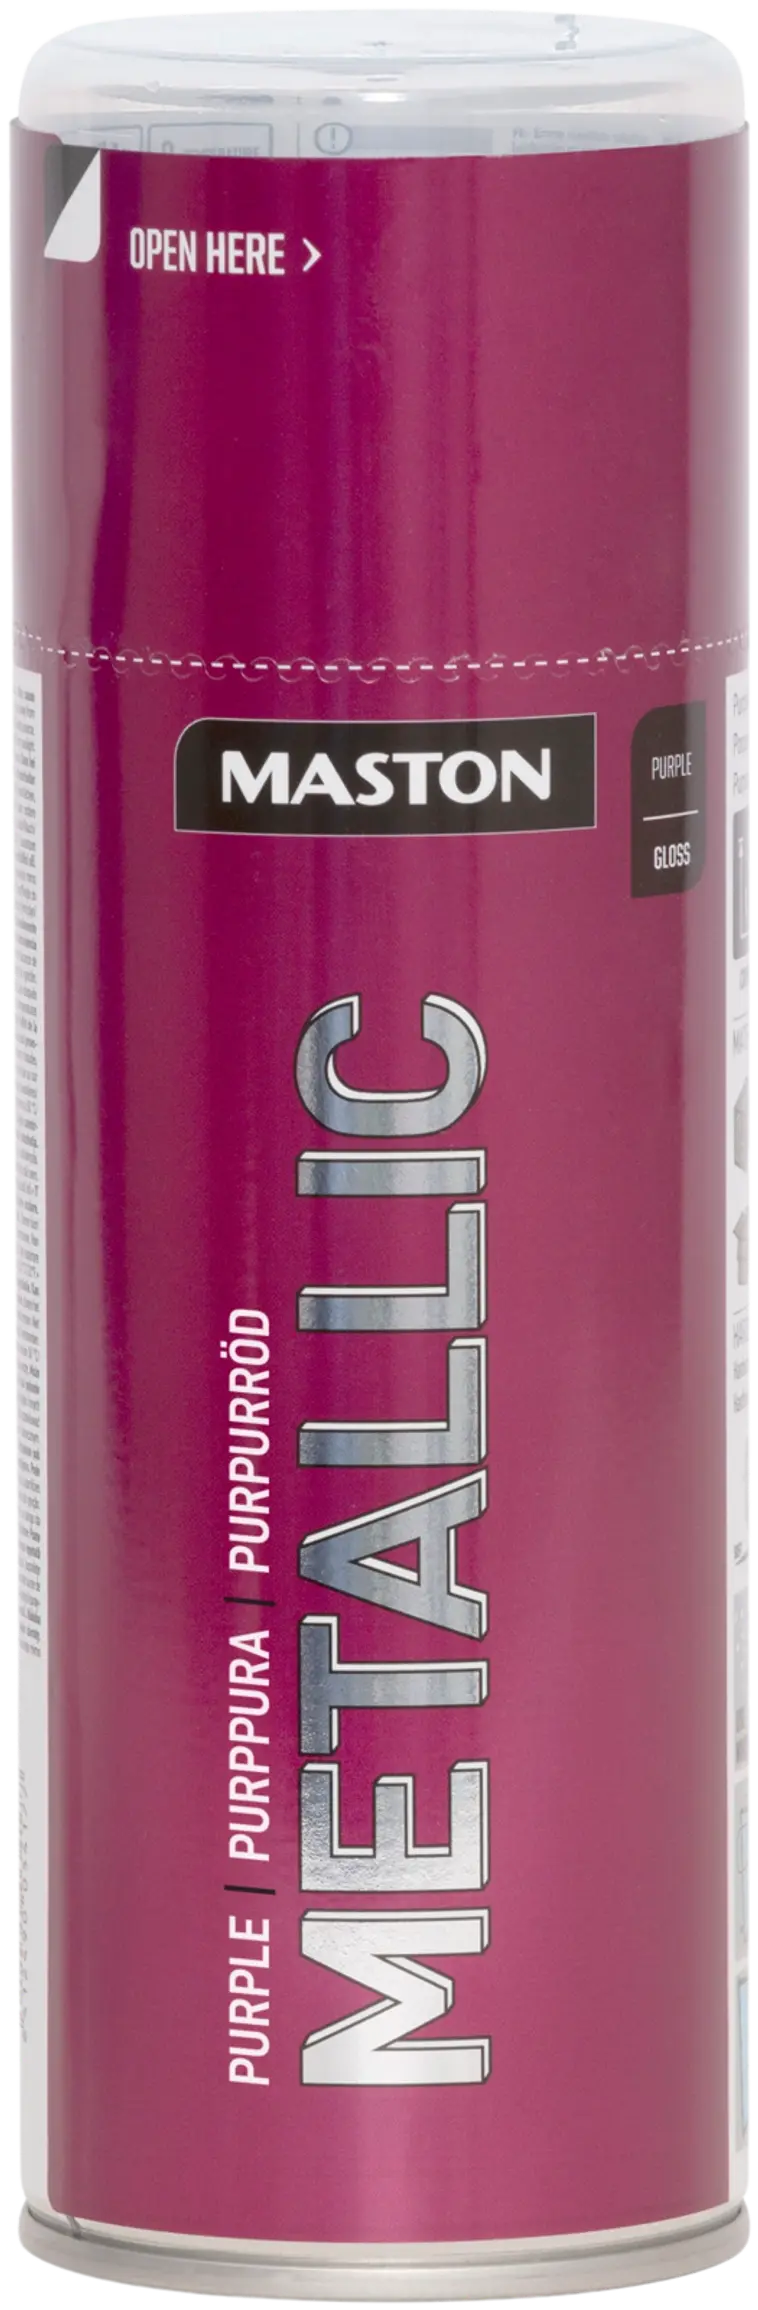 Maston Metallic spraymaali purppuranpunainen 400ml | Prisma verkkokauppa